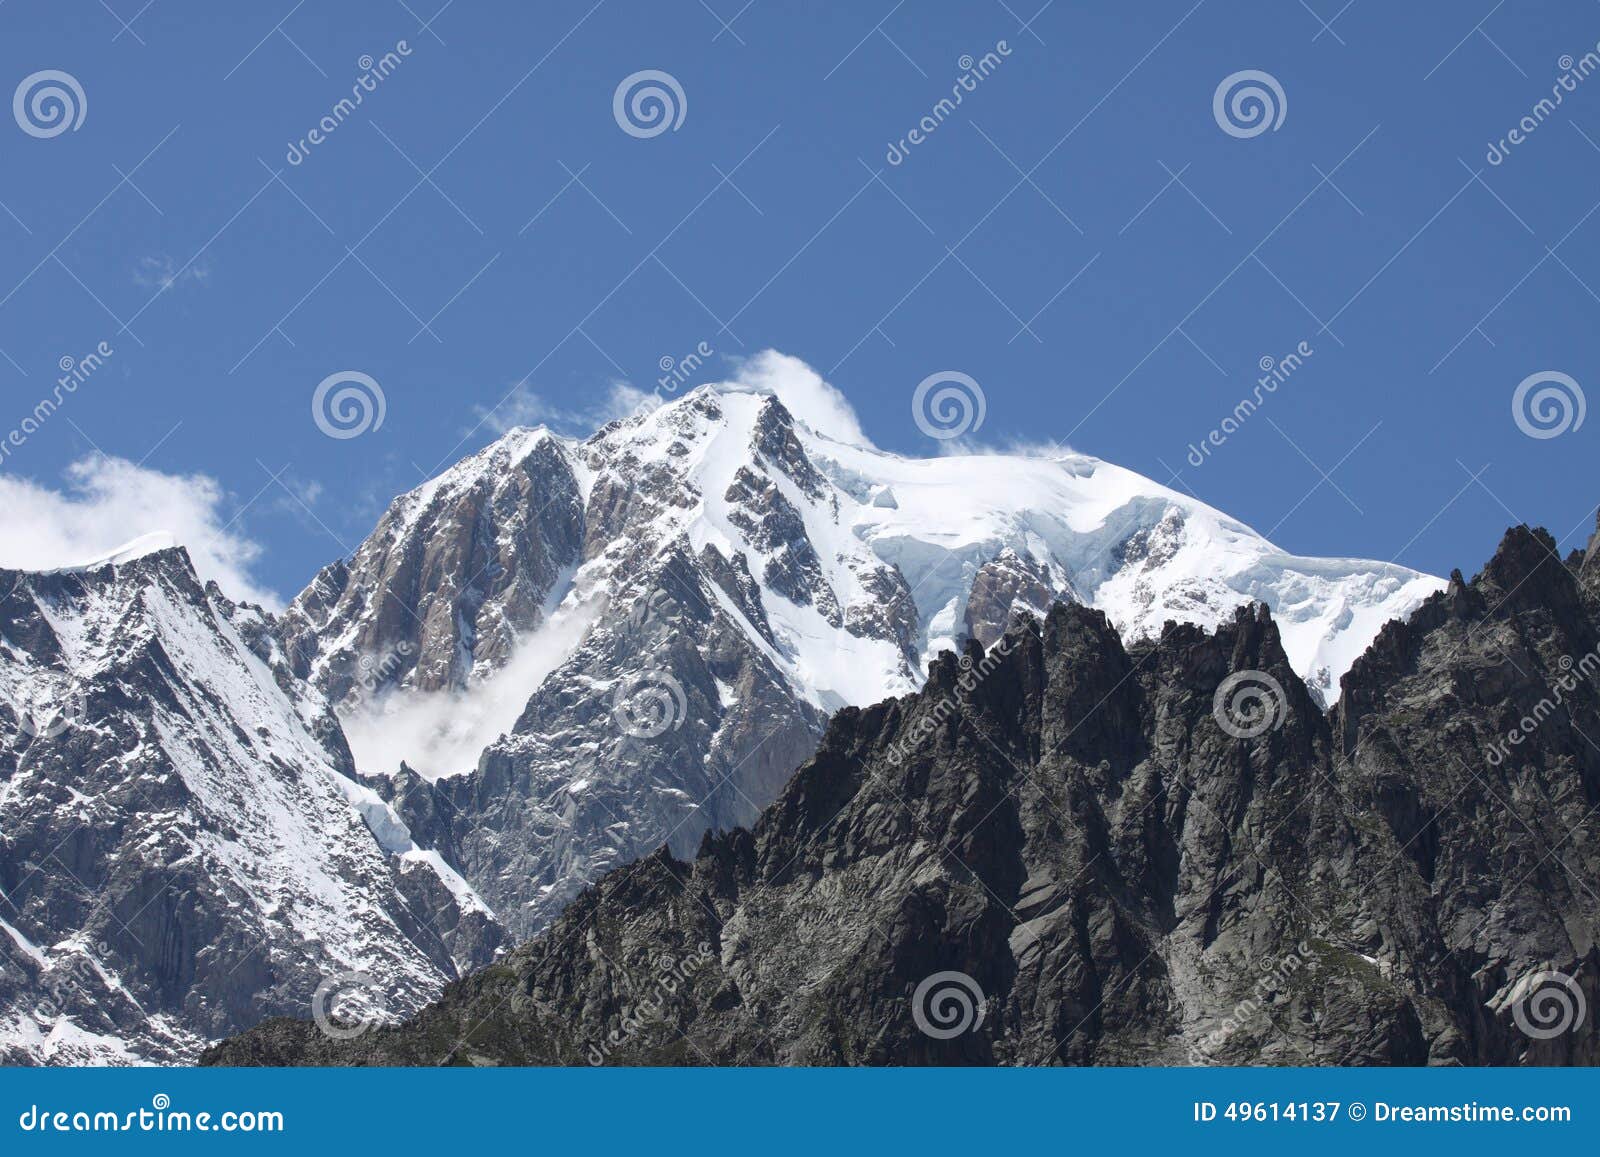 alpine mountain